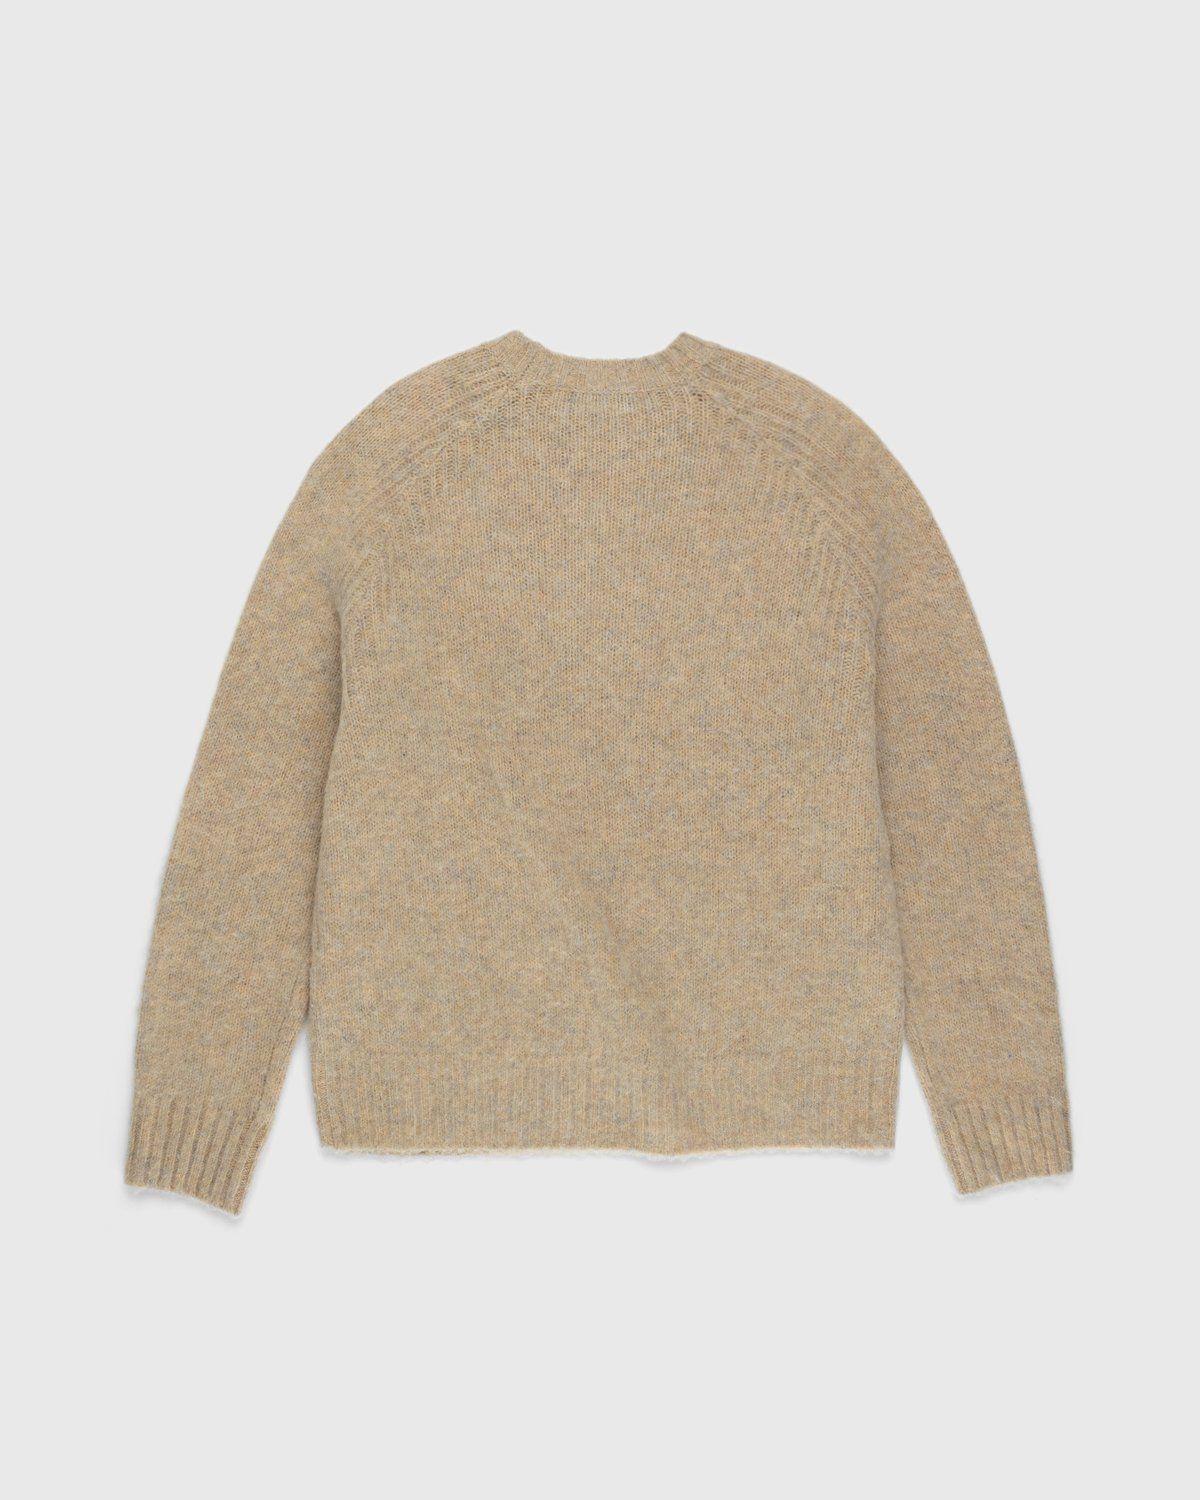 Acne Studios – Brushed Wool Crewneck Sweater Toffee Brown - Crewnecks - Brown - Image 2